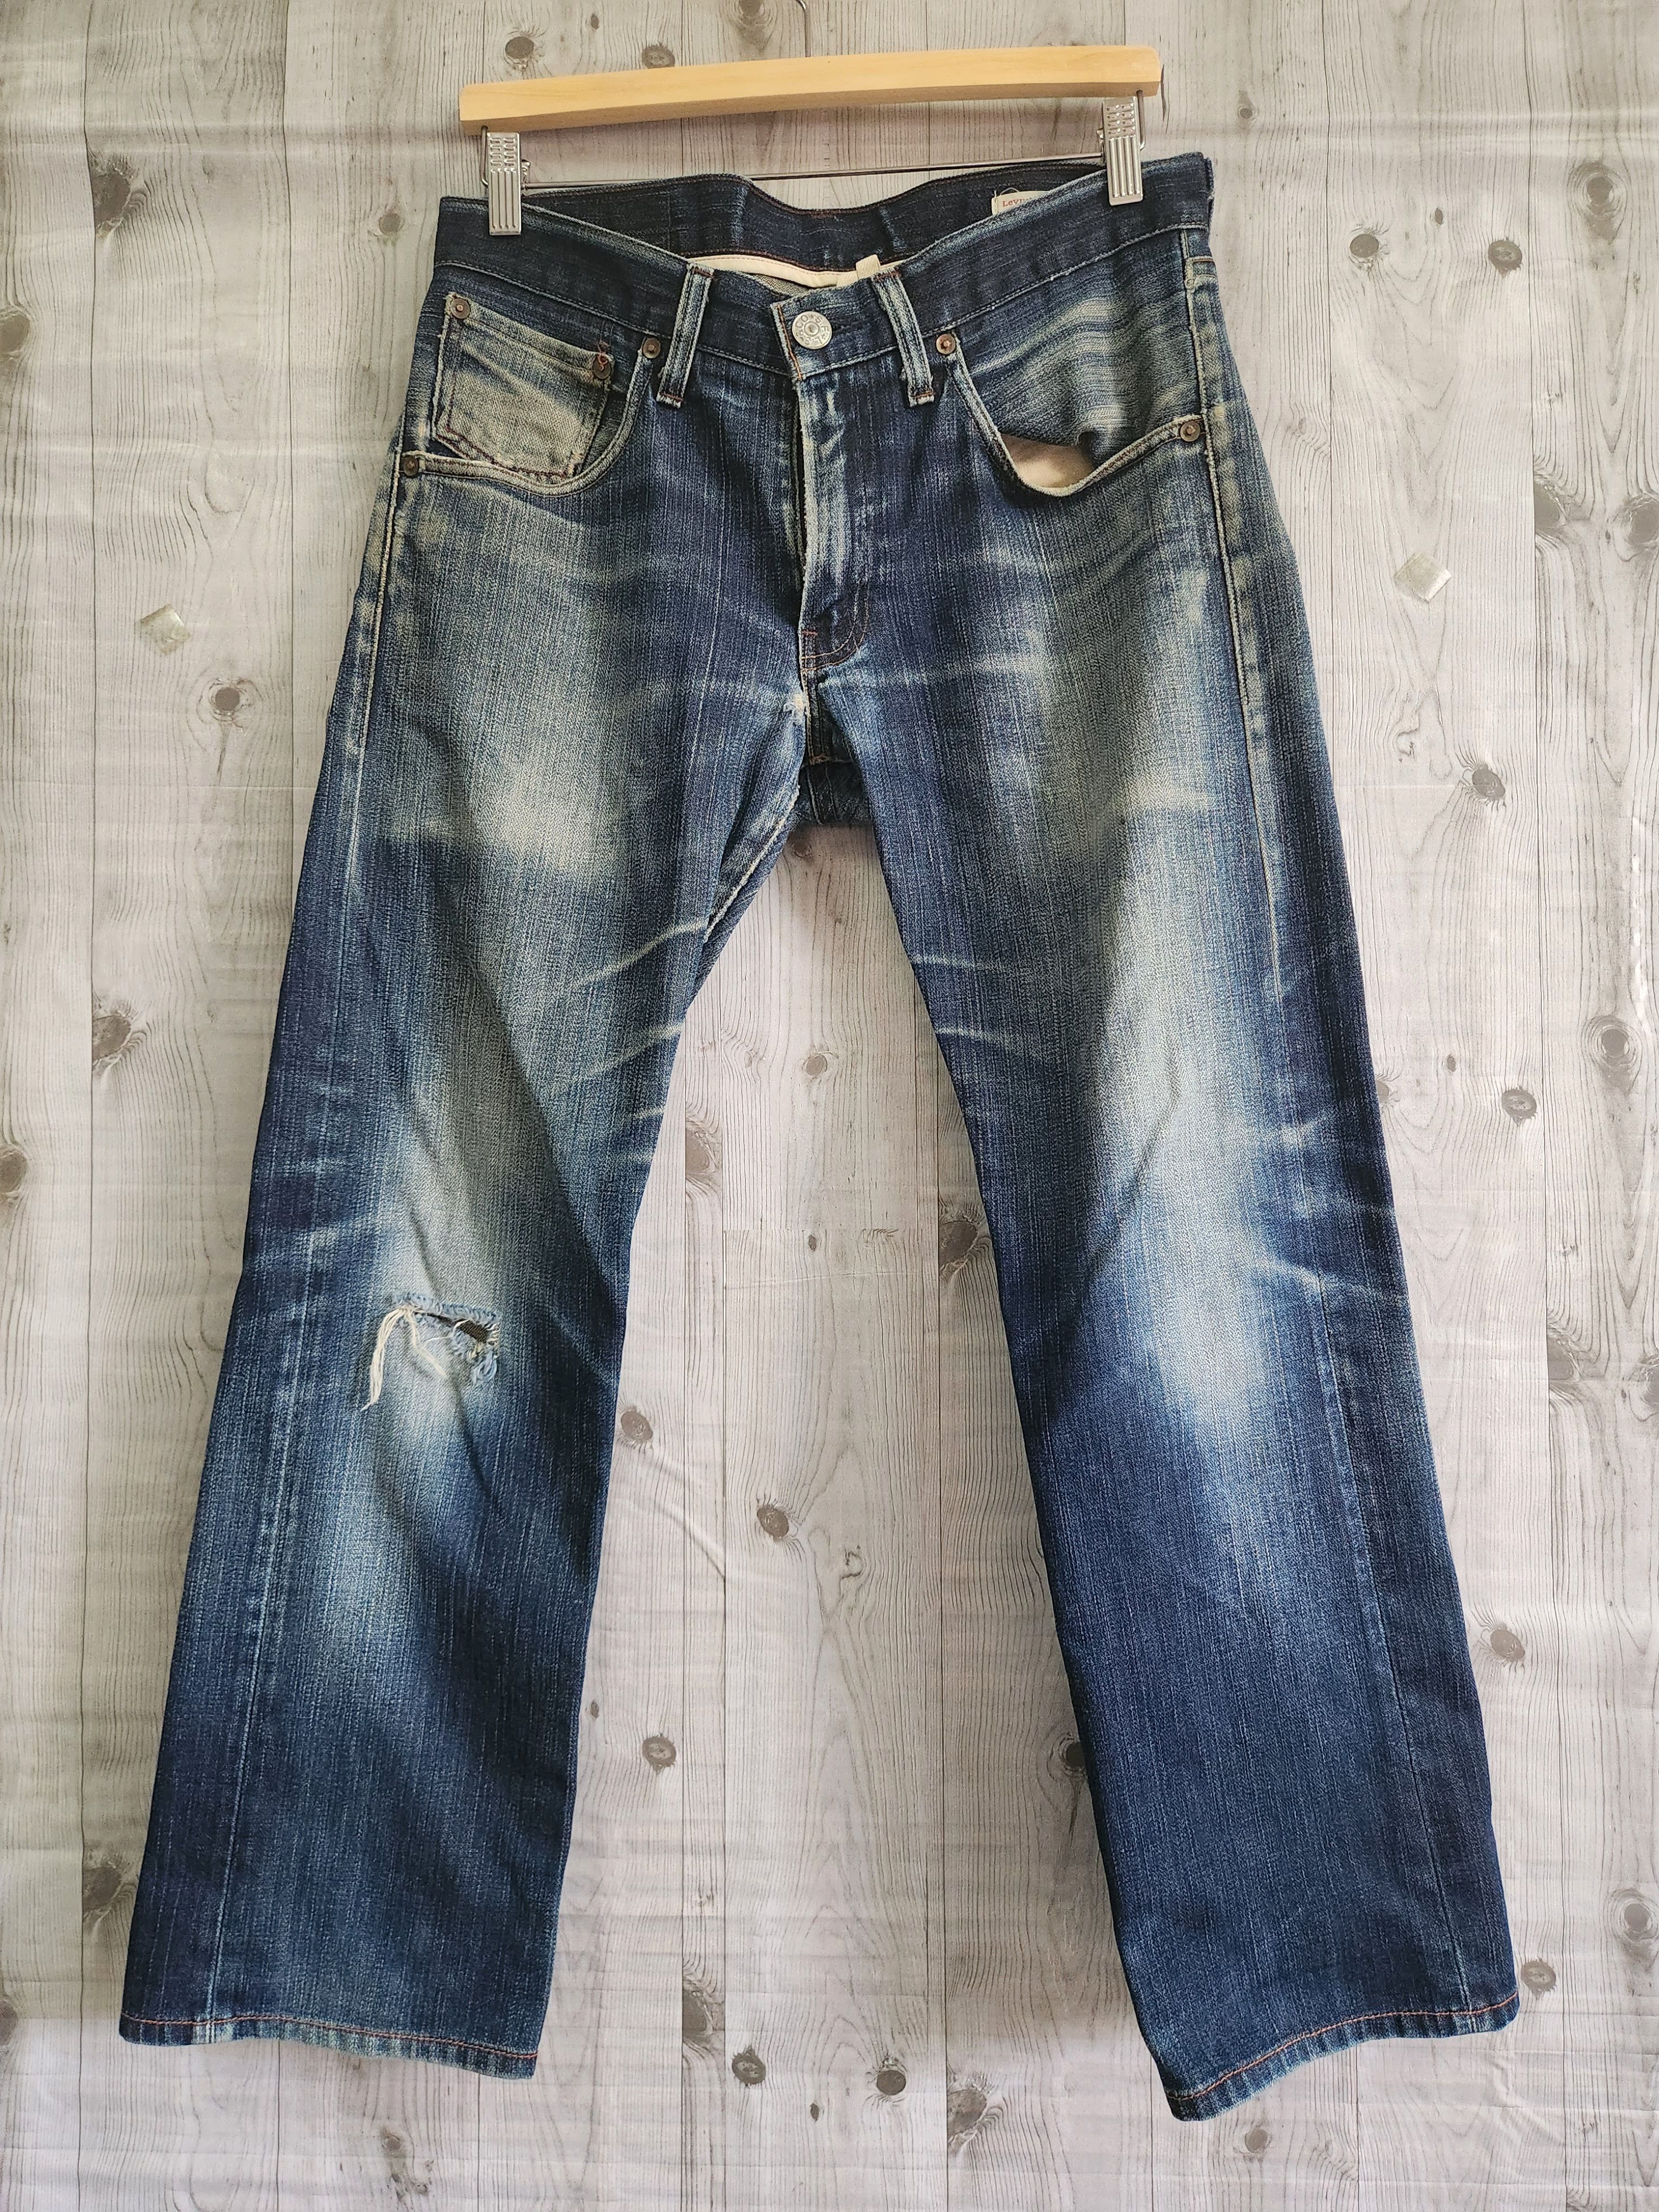 Levis 505 Premium Distressed Denim Jeans - 1